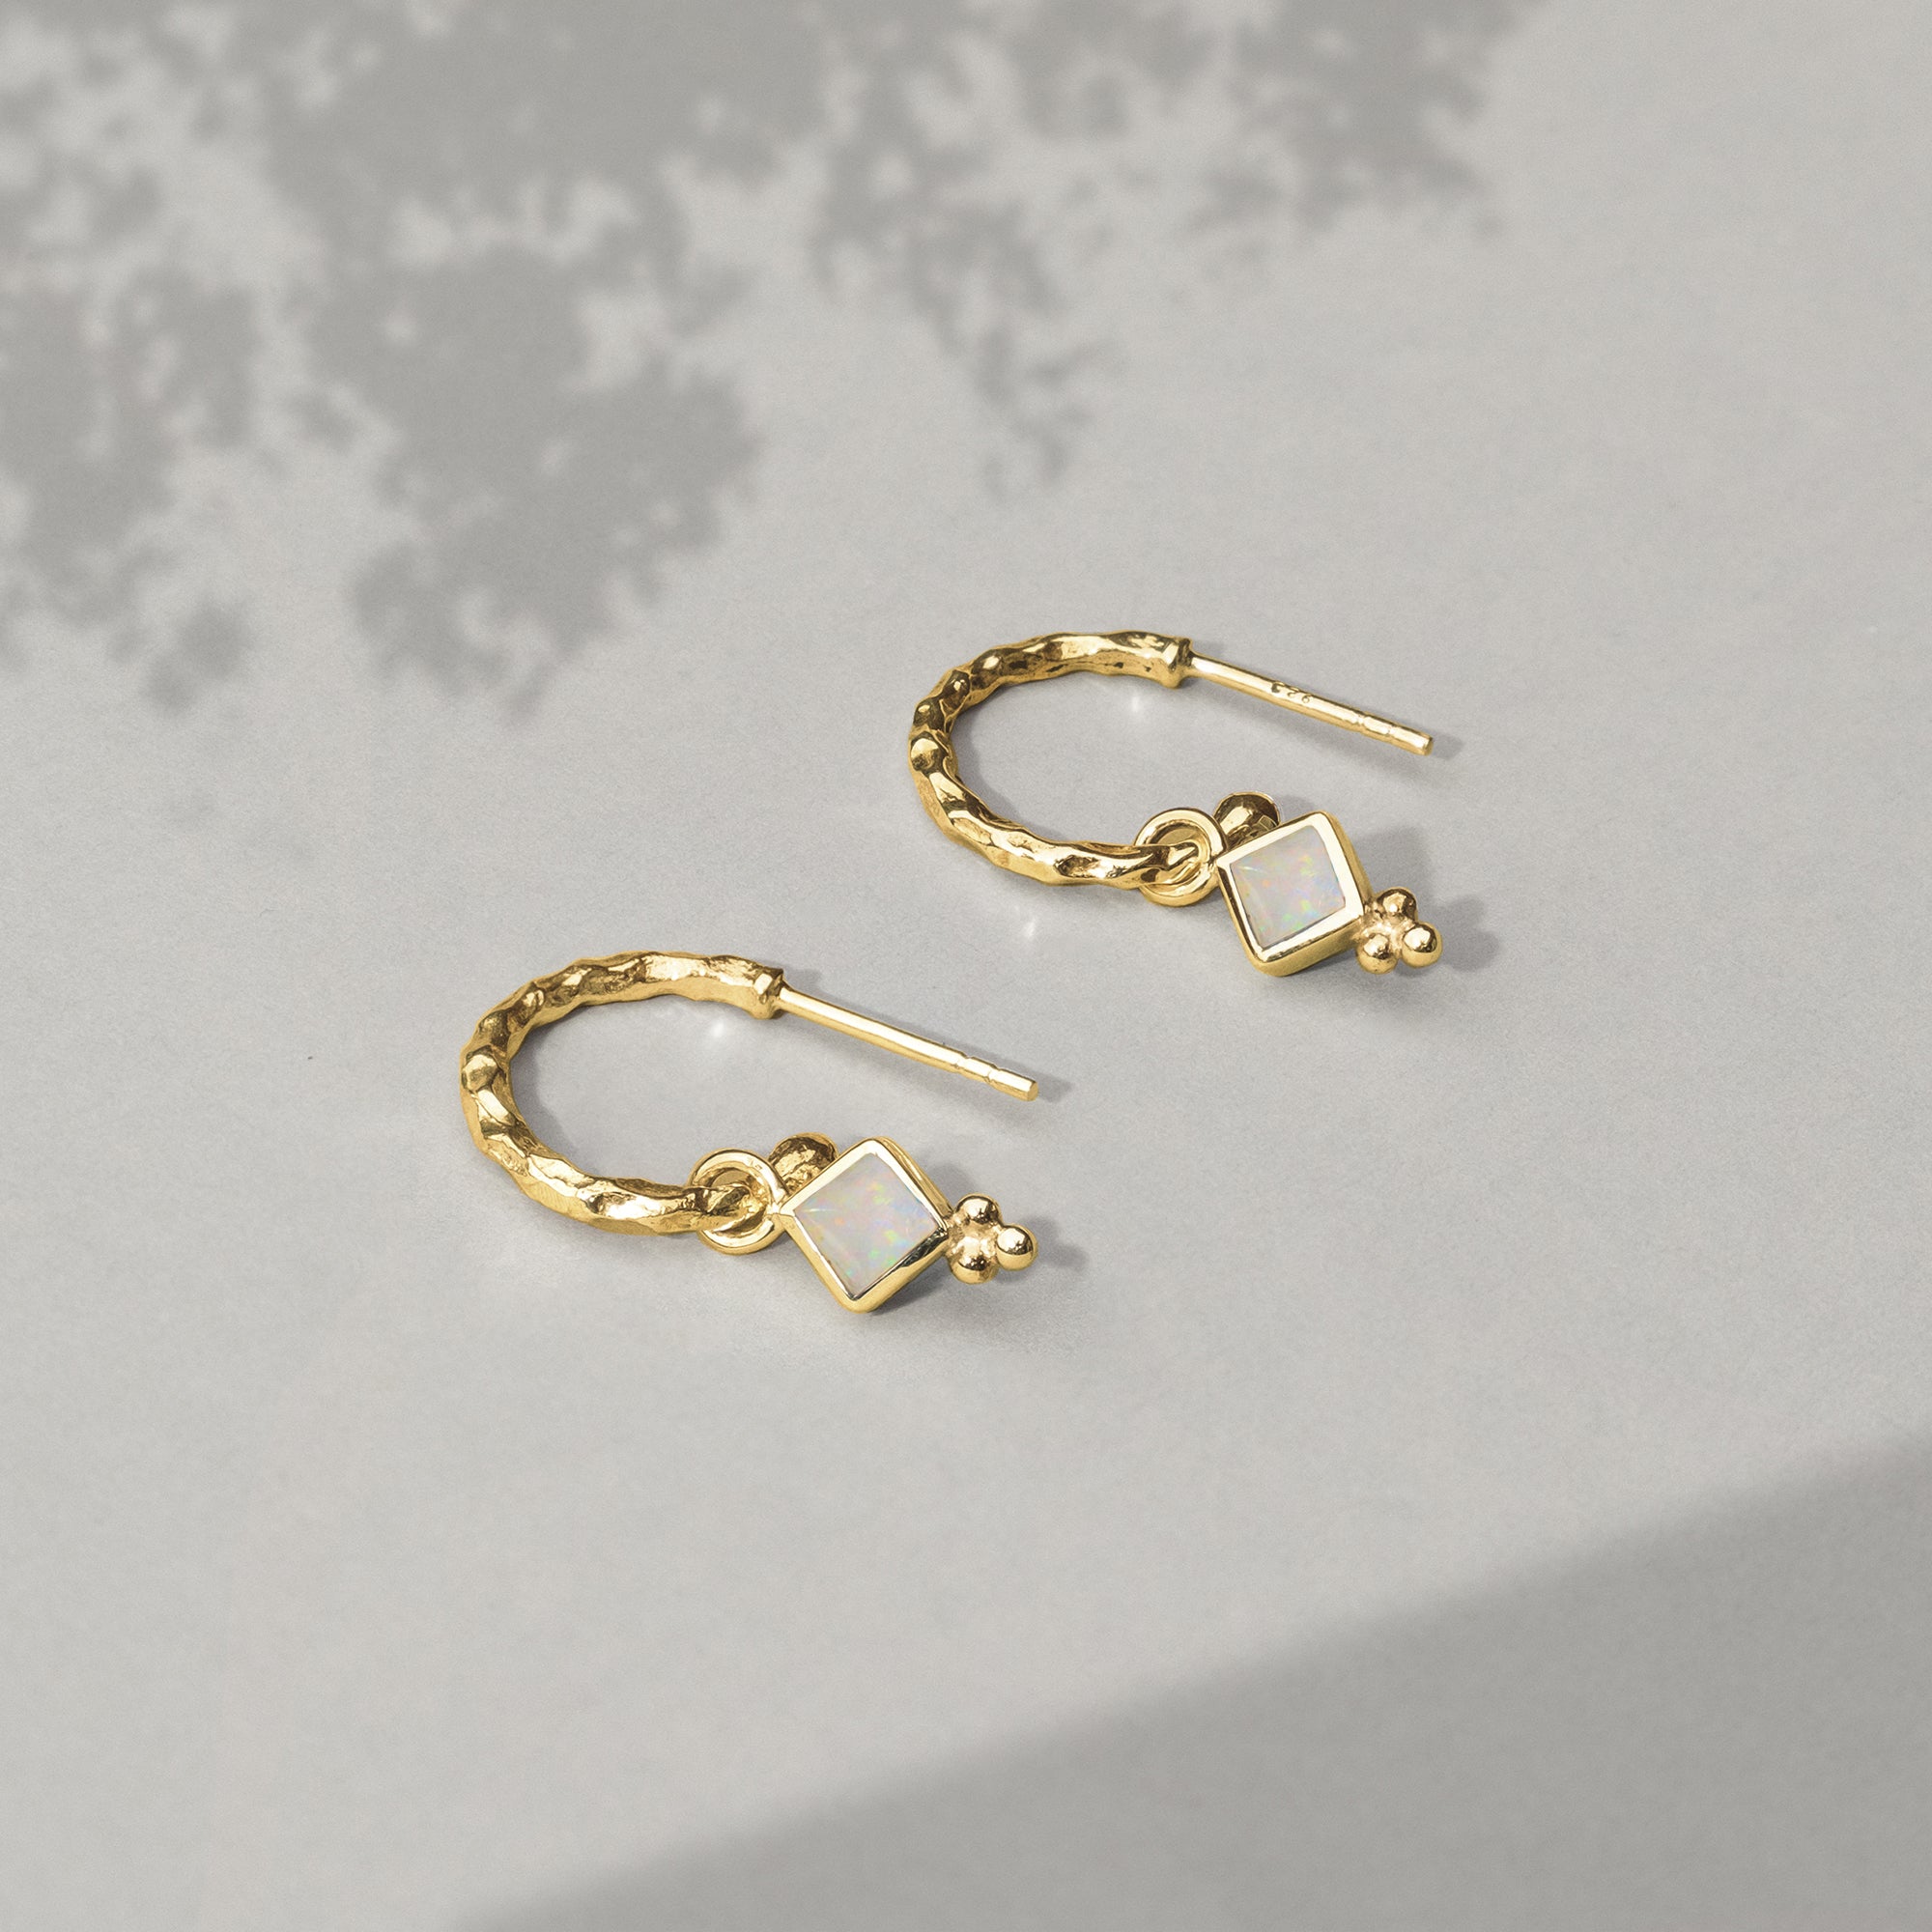 Opal Earrings, Gold Vermeil Hoops, October Birthstone